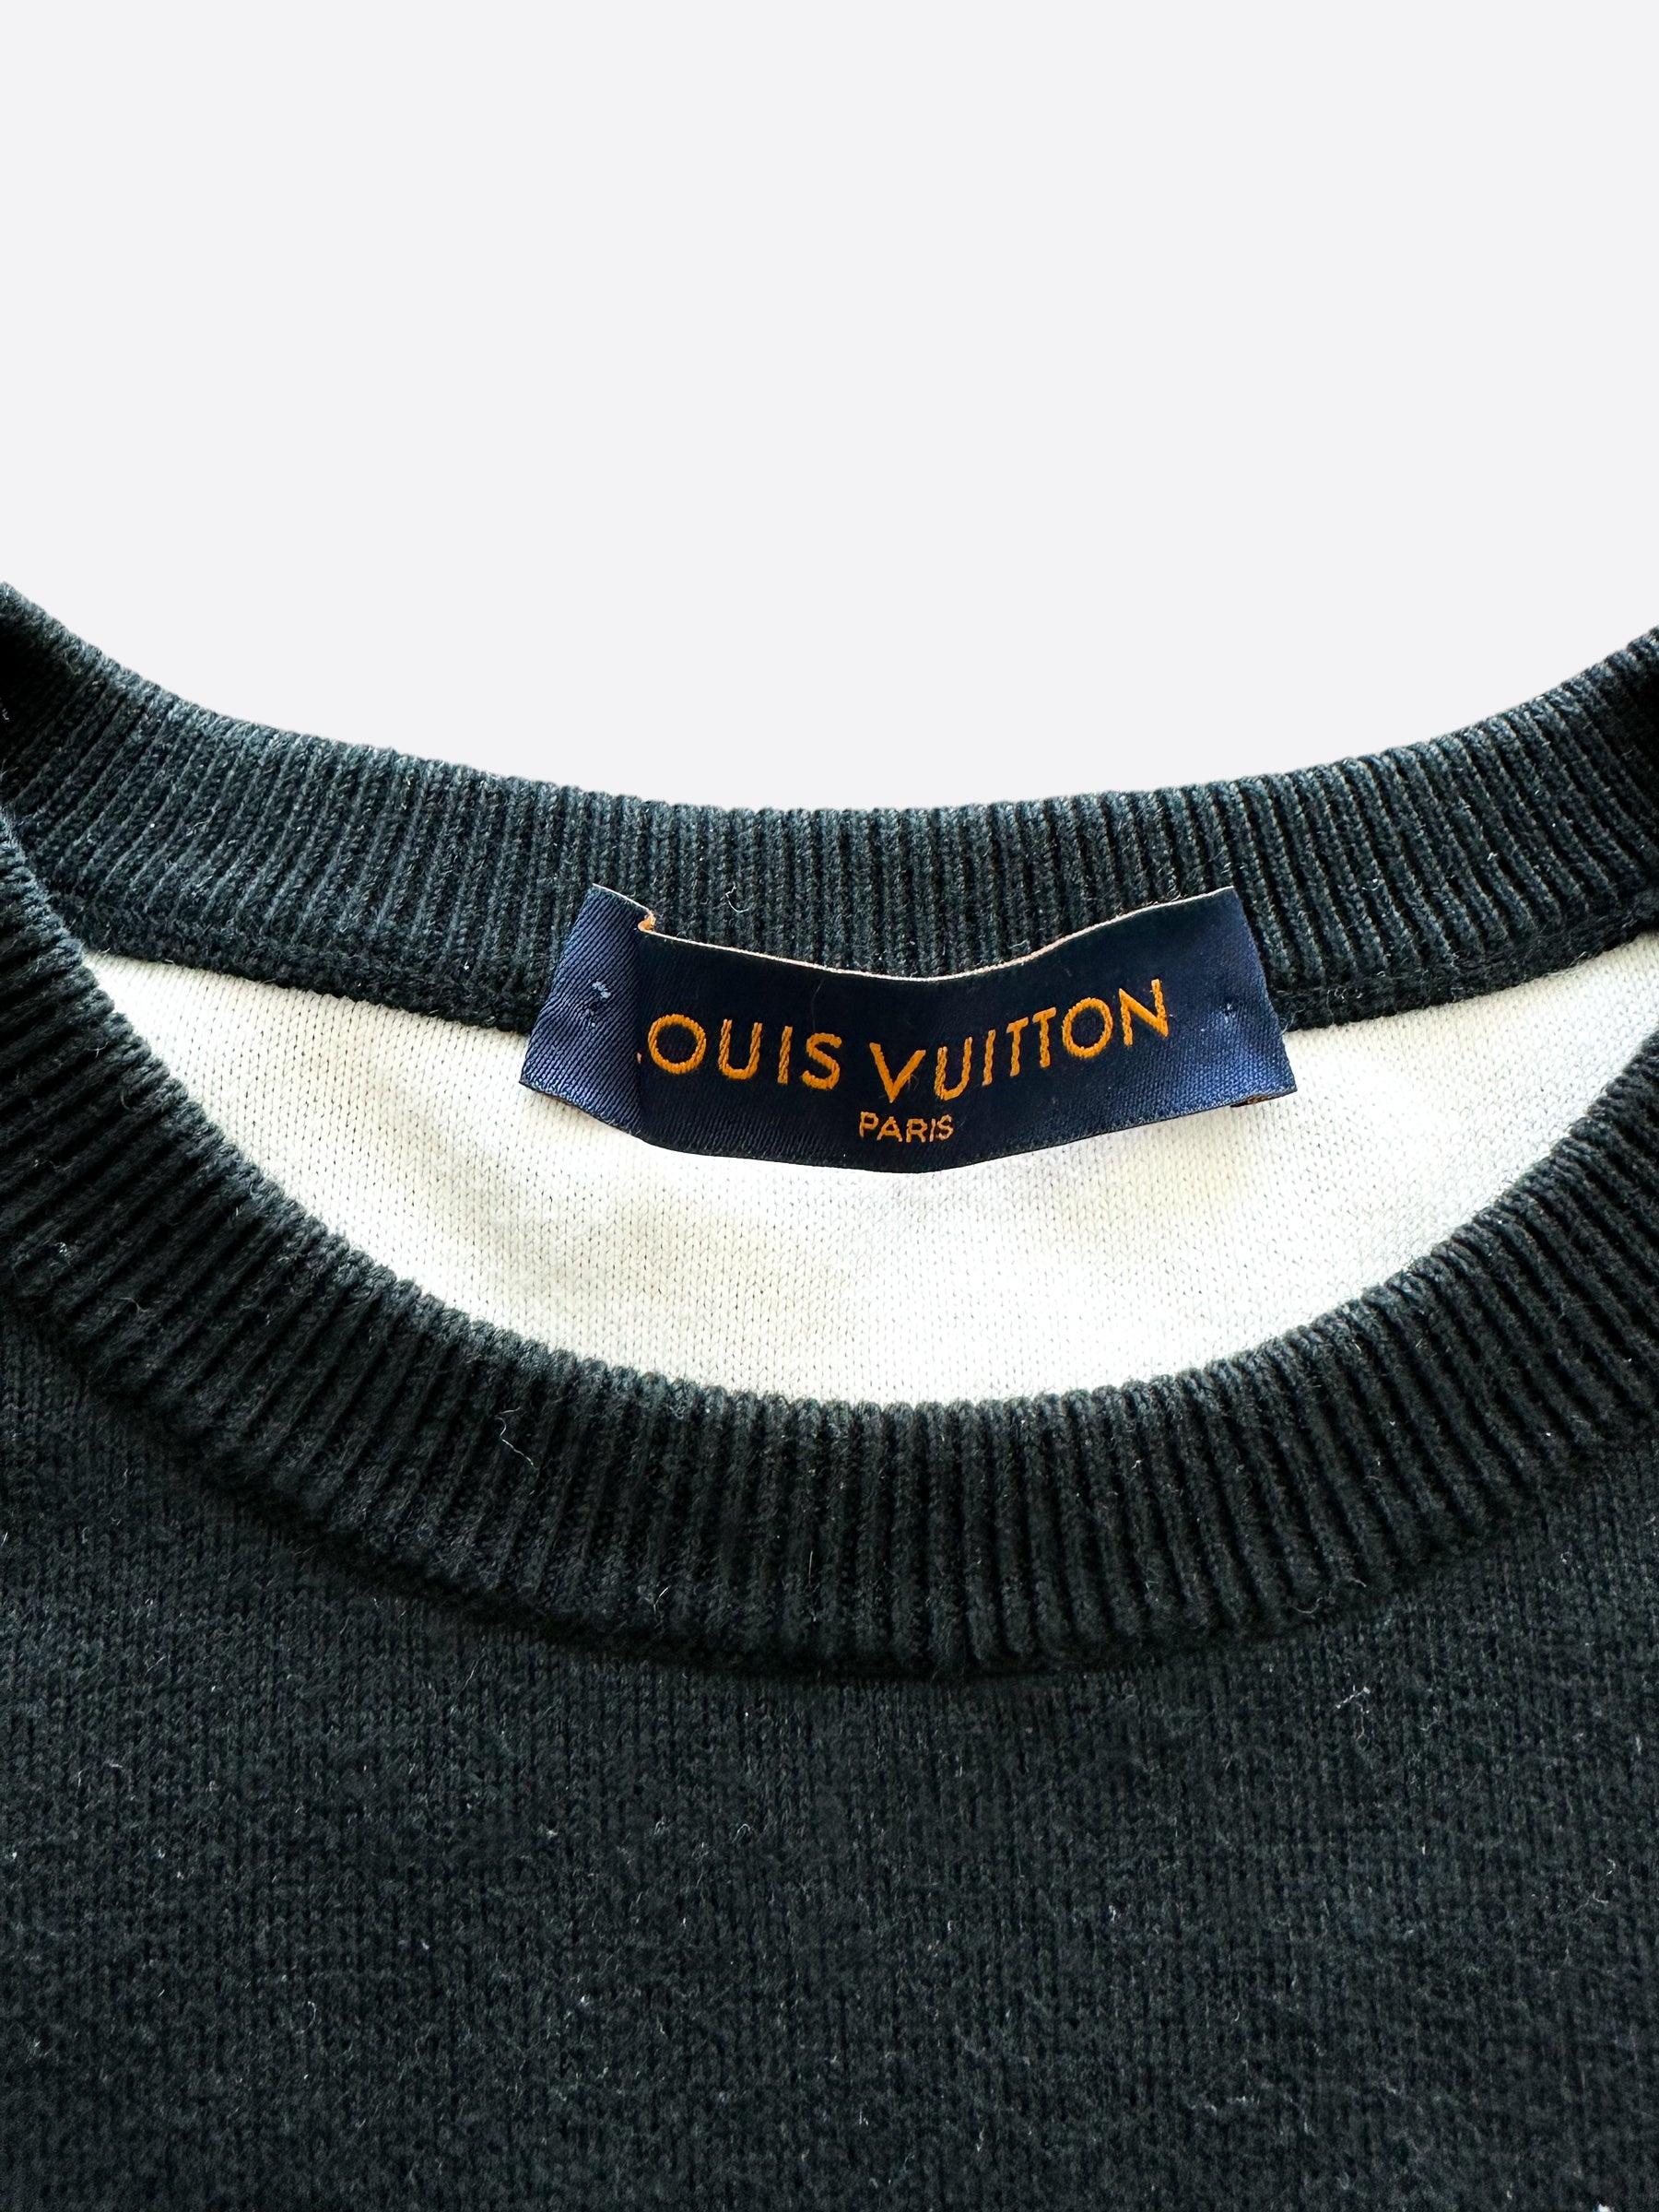 SUPREME X LOUIS Vuitton Hoodie XL $1,000.00 - PicClick